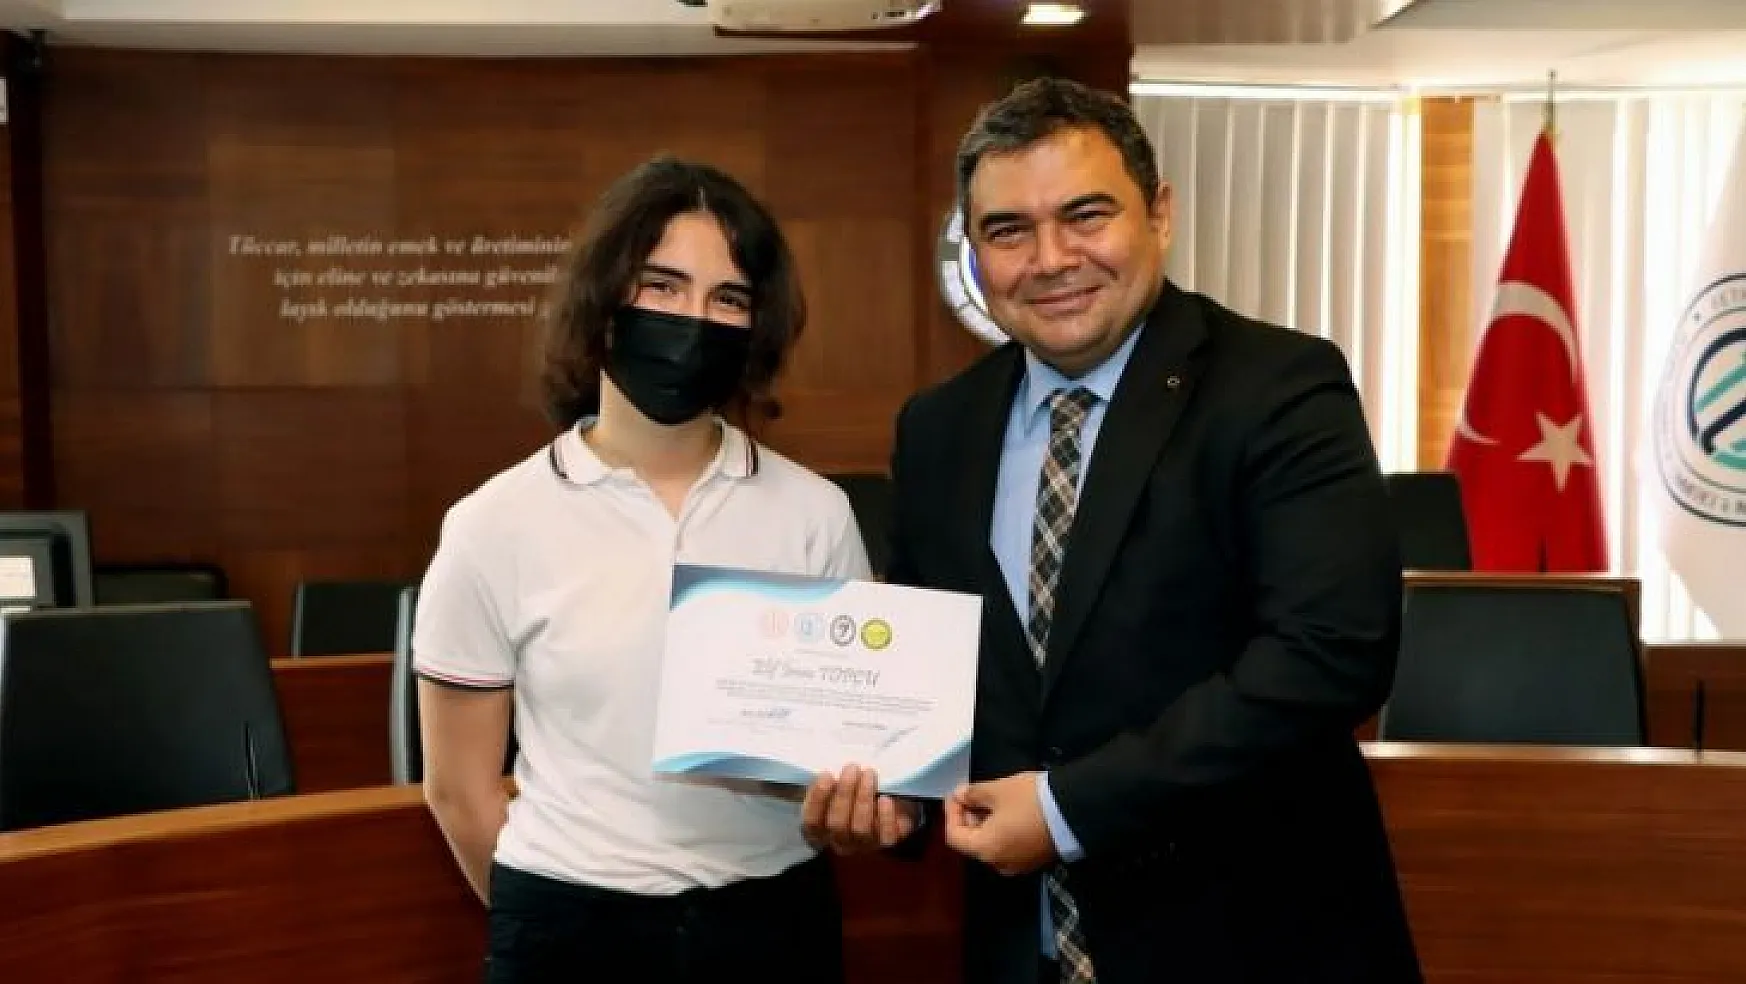 Rusça dil kursuna katılan öğrencilere sertifikaları verildi